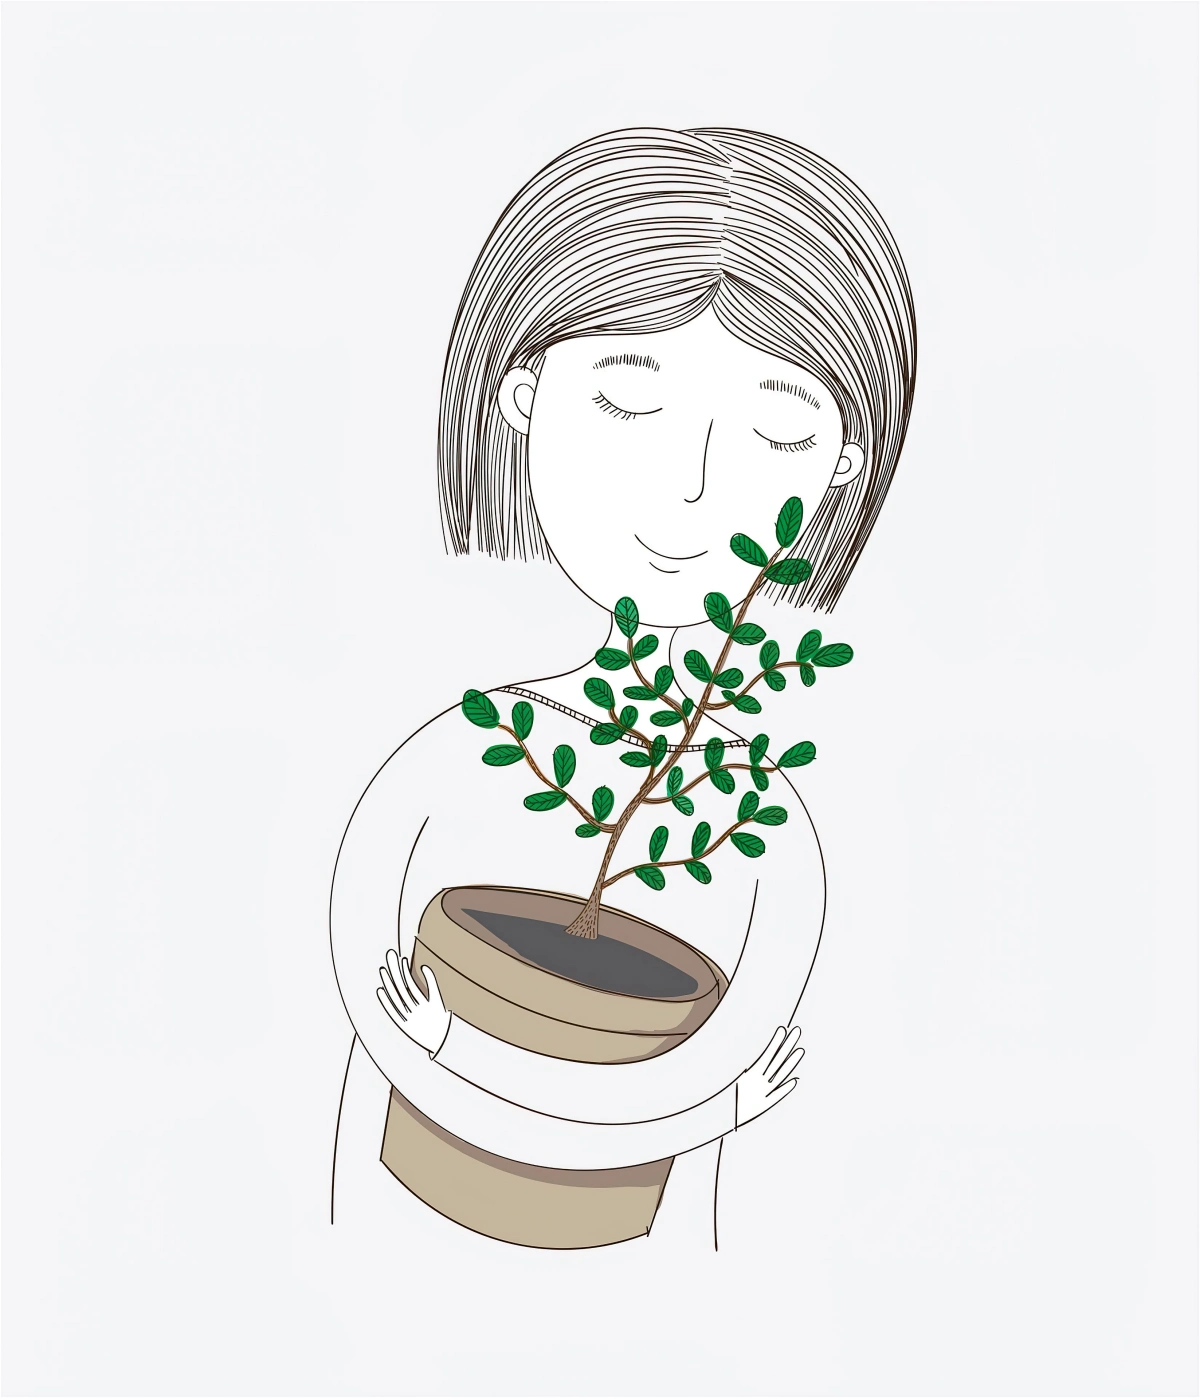 dessin facile a faire pour debutant plante verte arbre pot marron silhouette femme